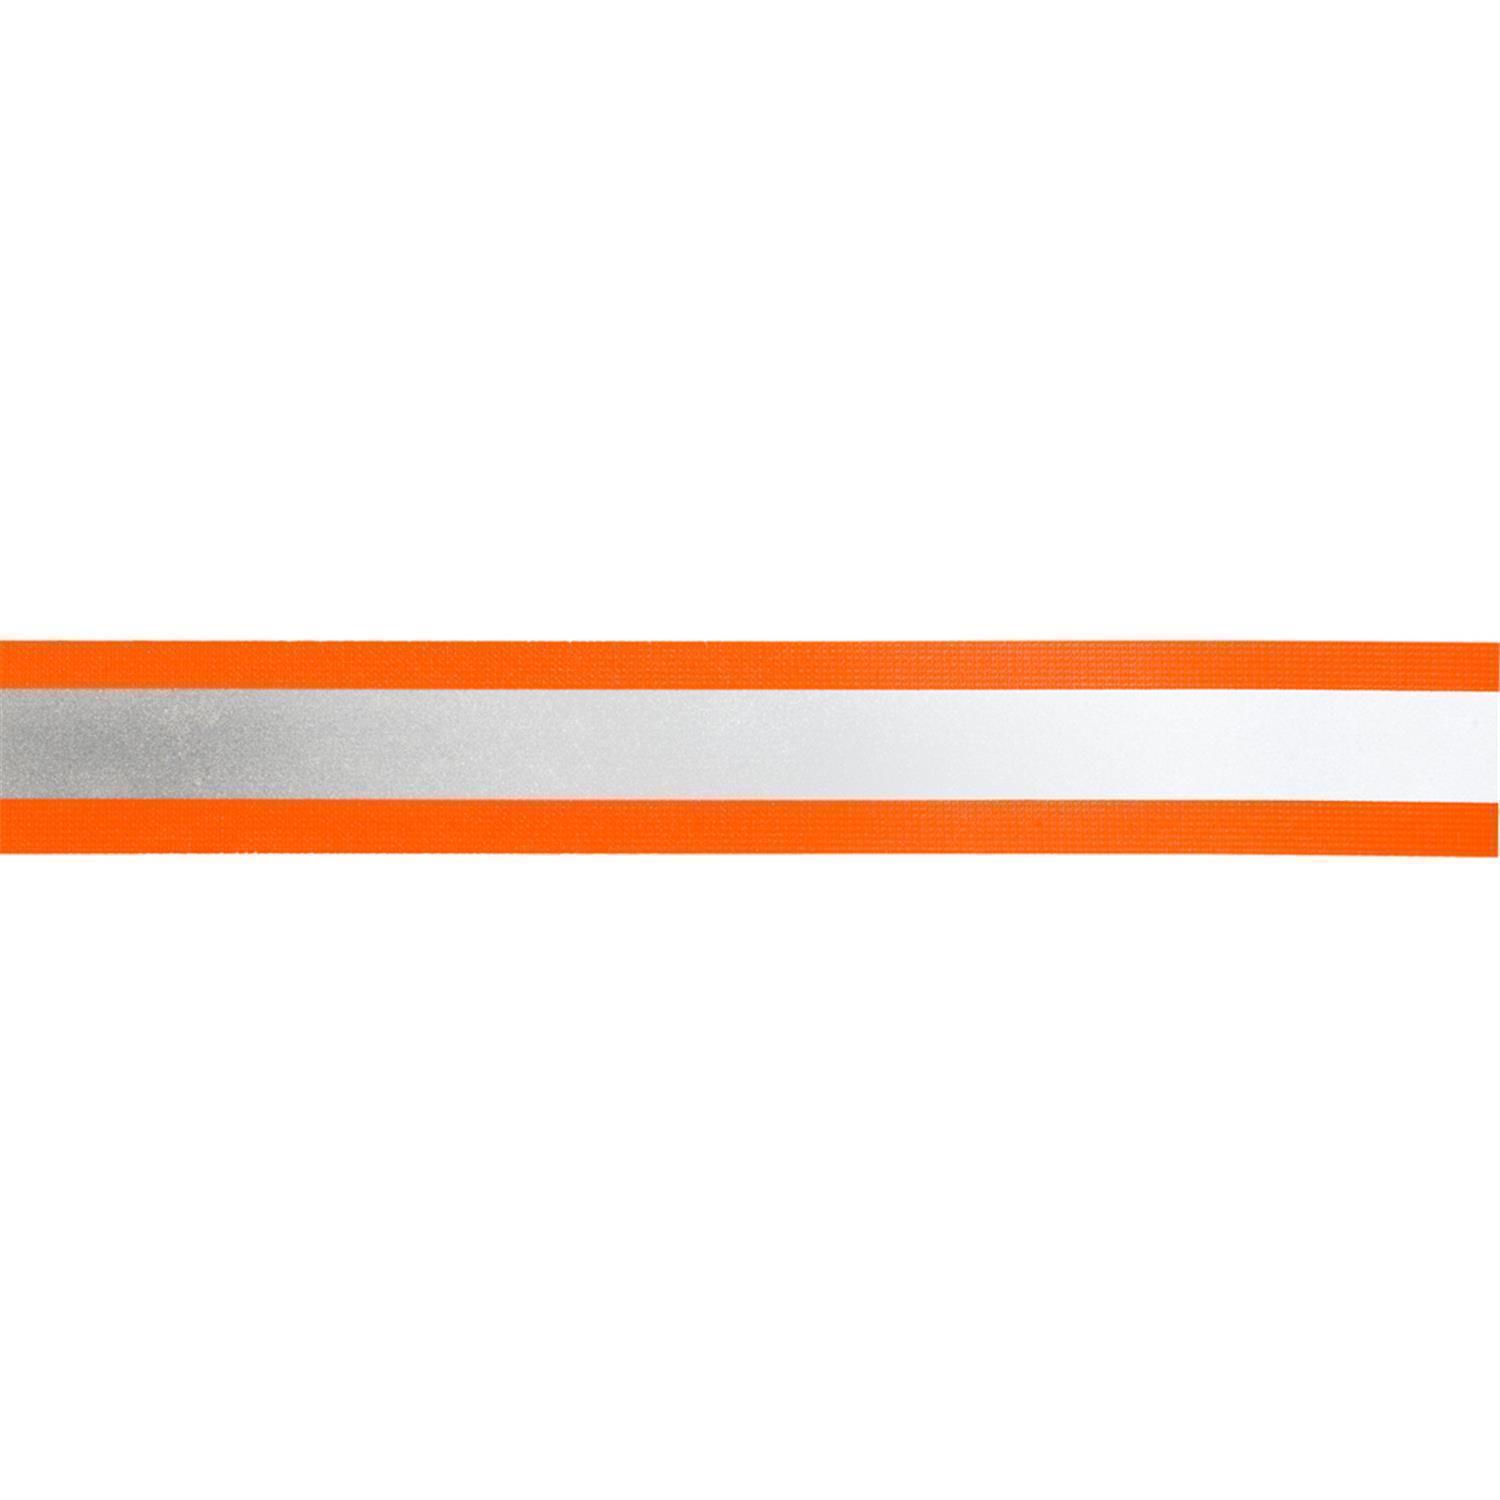 Reflektorband 40mm breit in 2 Farben orange-silber 05 Meter